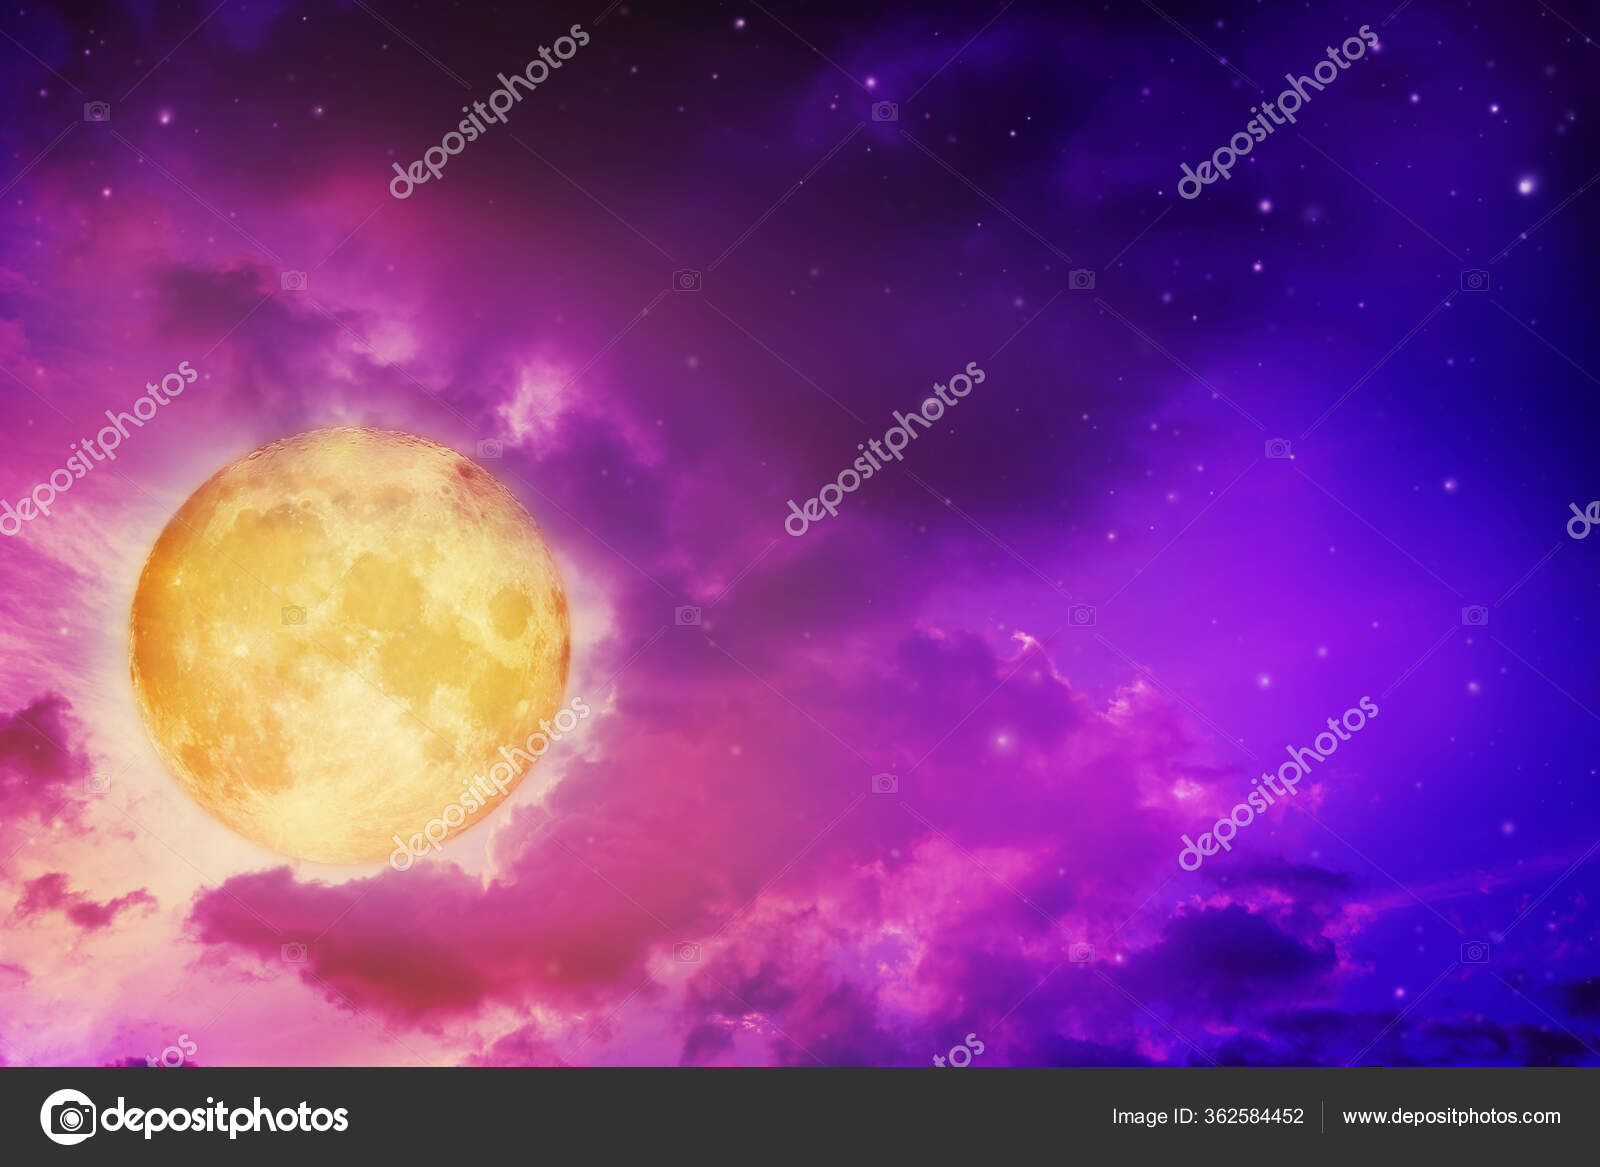 nasa moon night sky